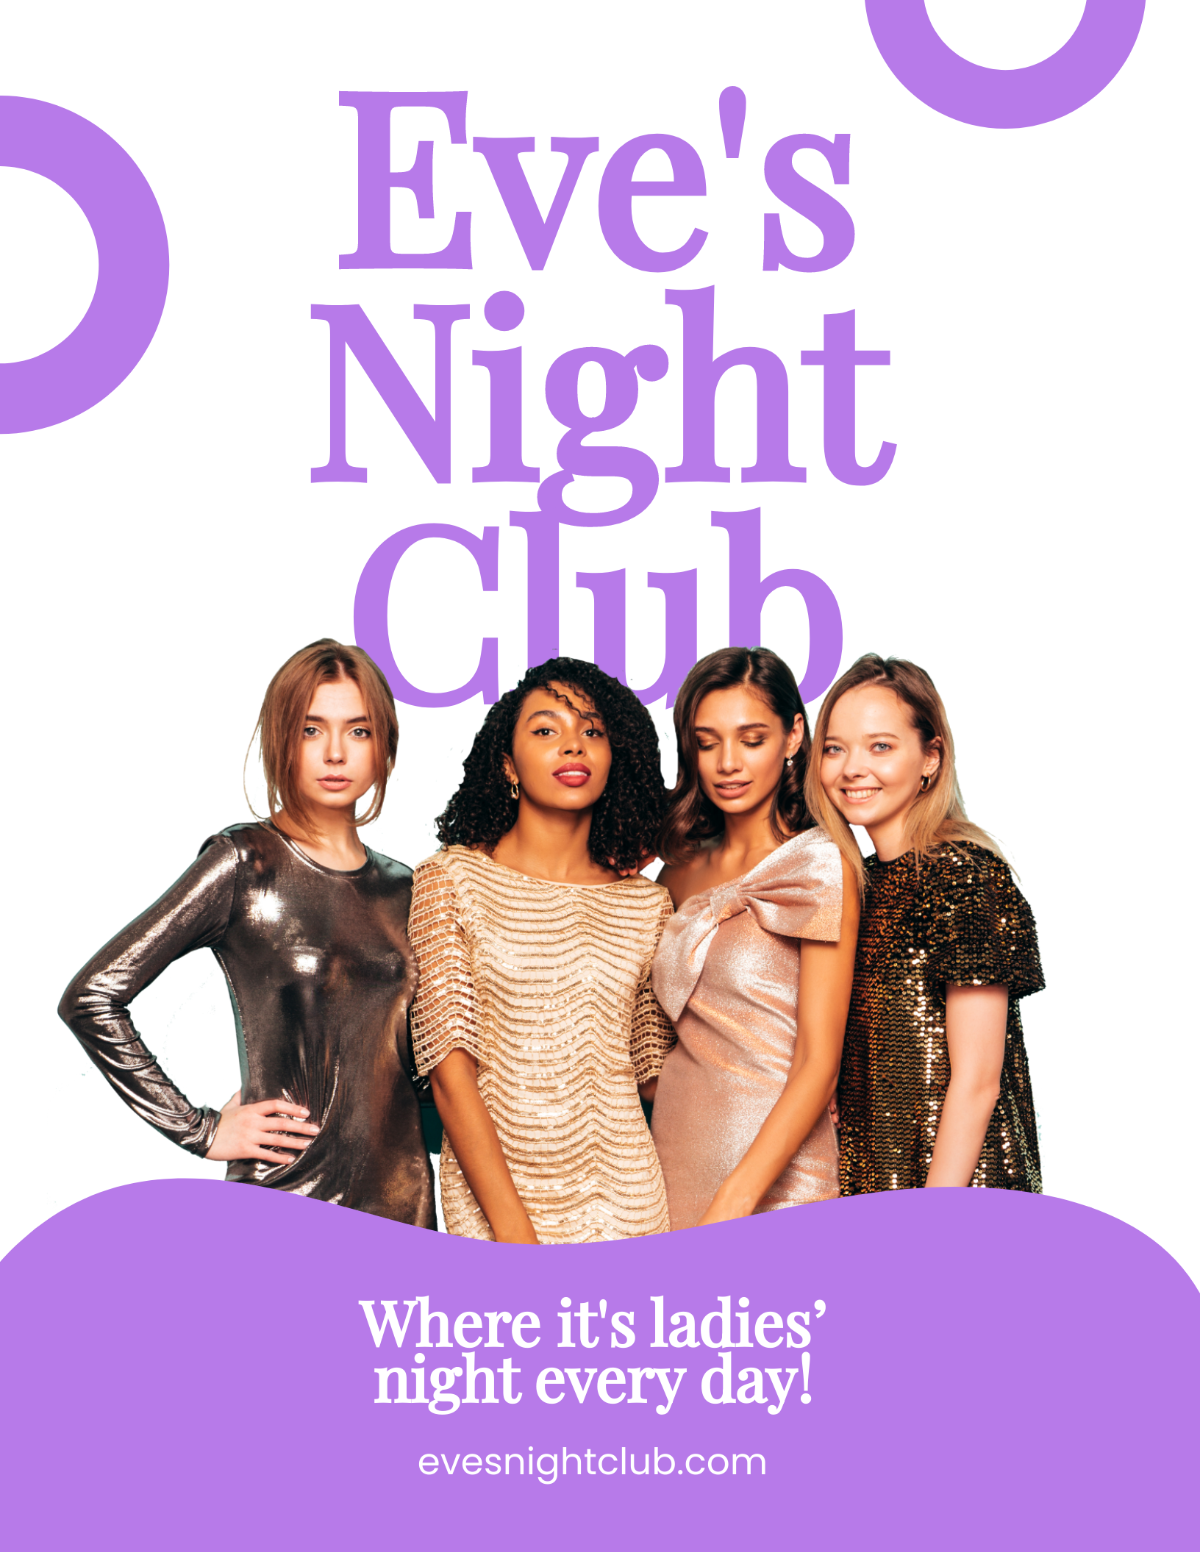 Ladies Nightclub Flyer Template